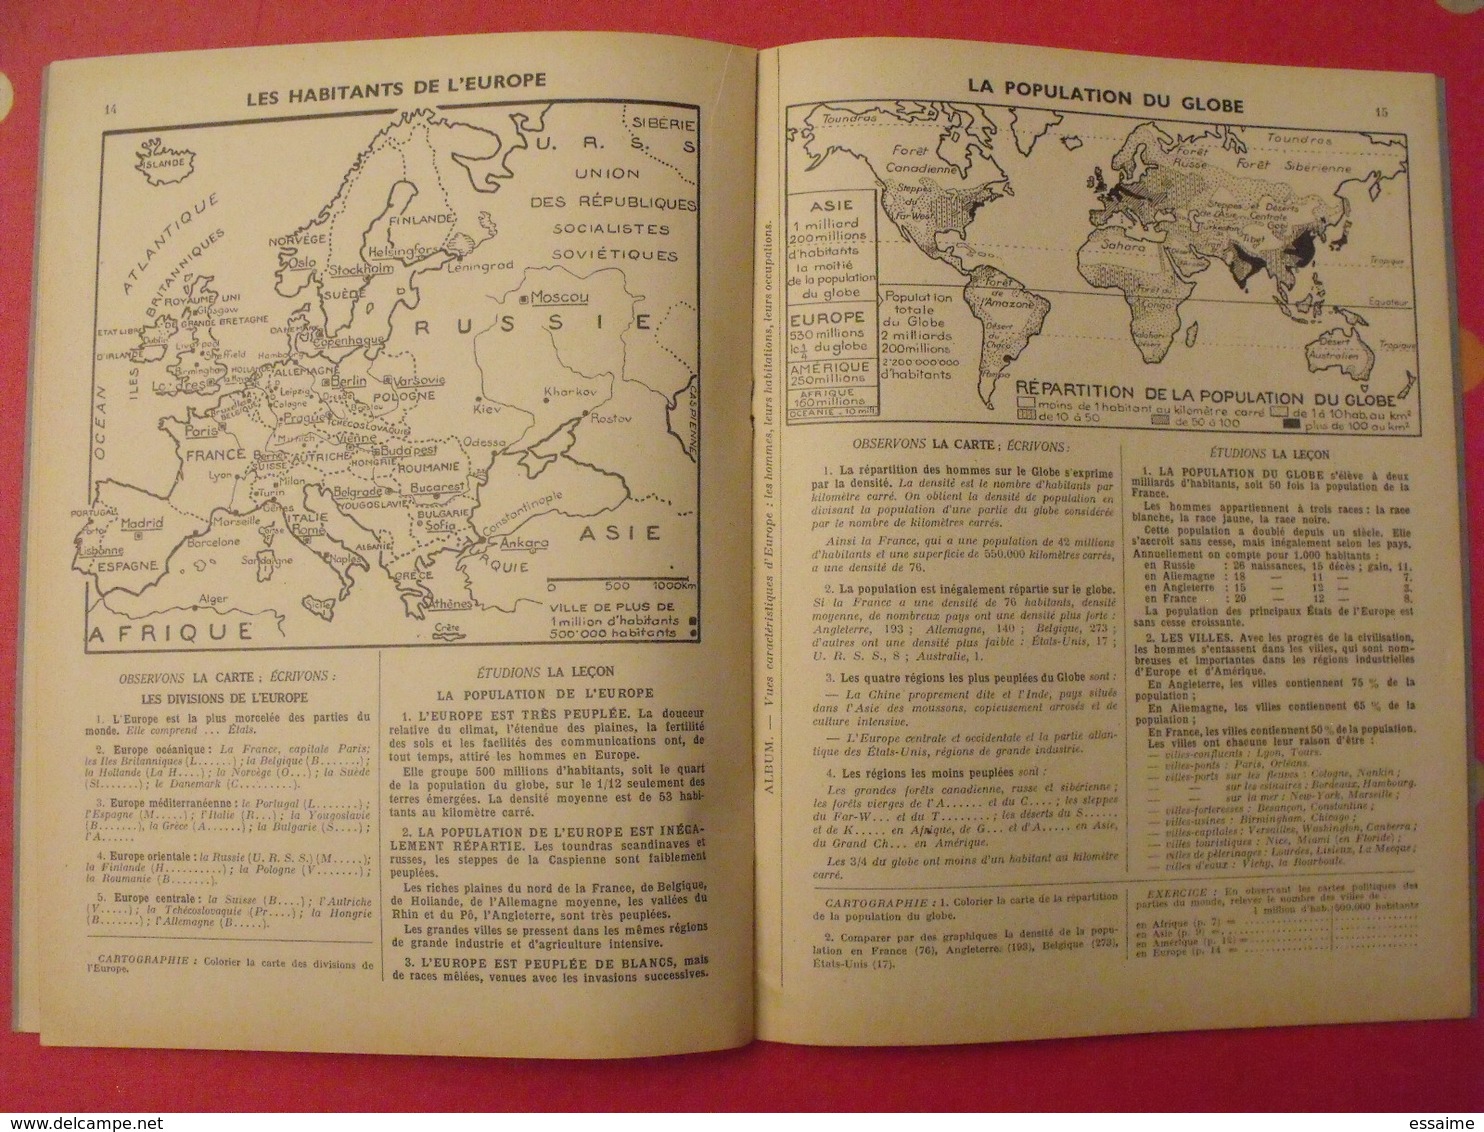 3 livrets de géographie. E. Millet. Arrault et Cie, tours, 1949, 1960. communauté française, monde